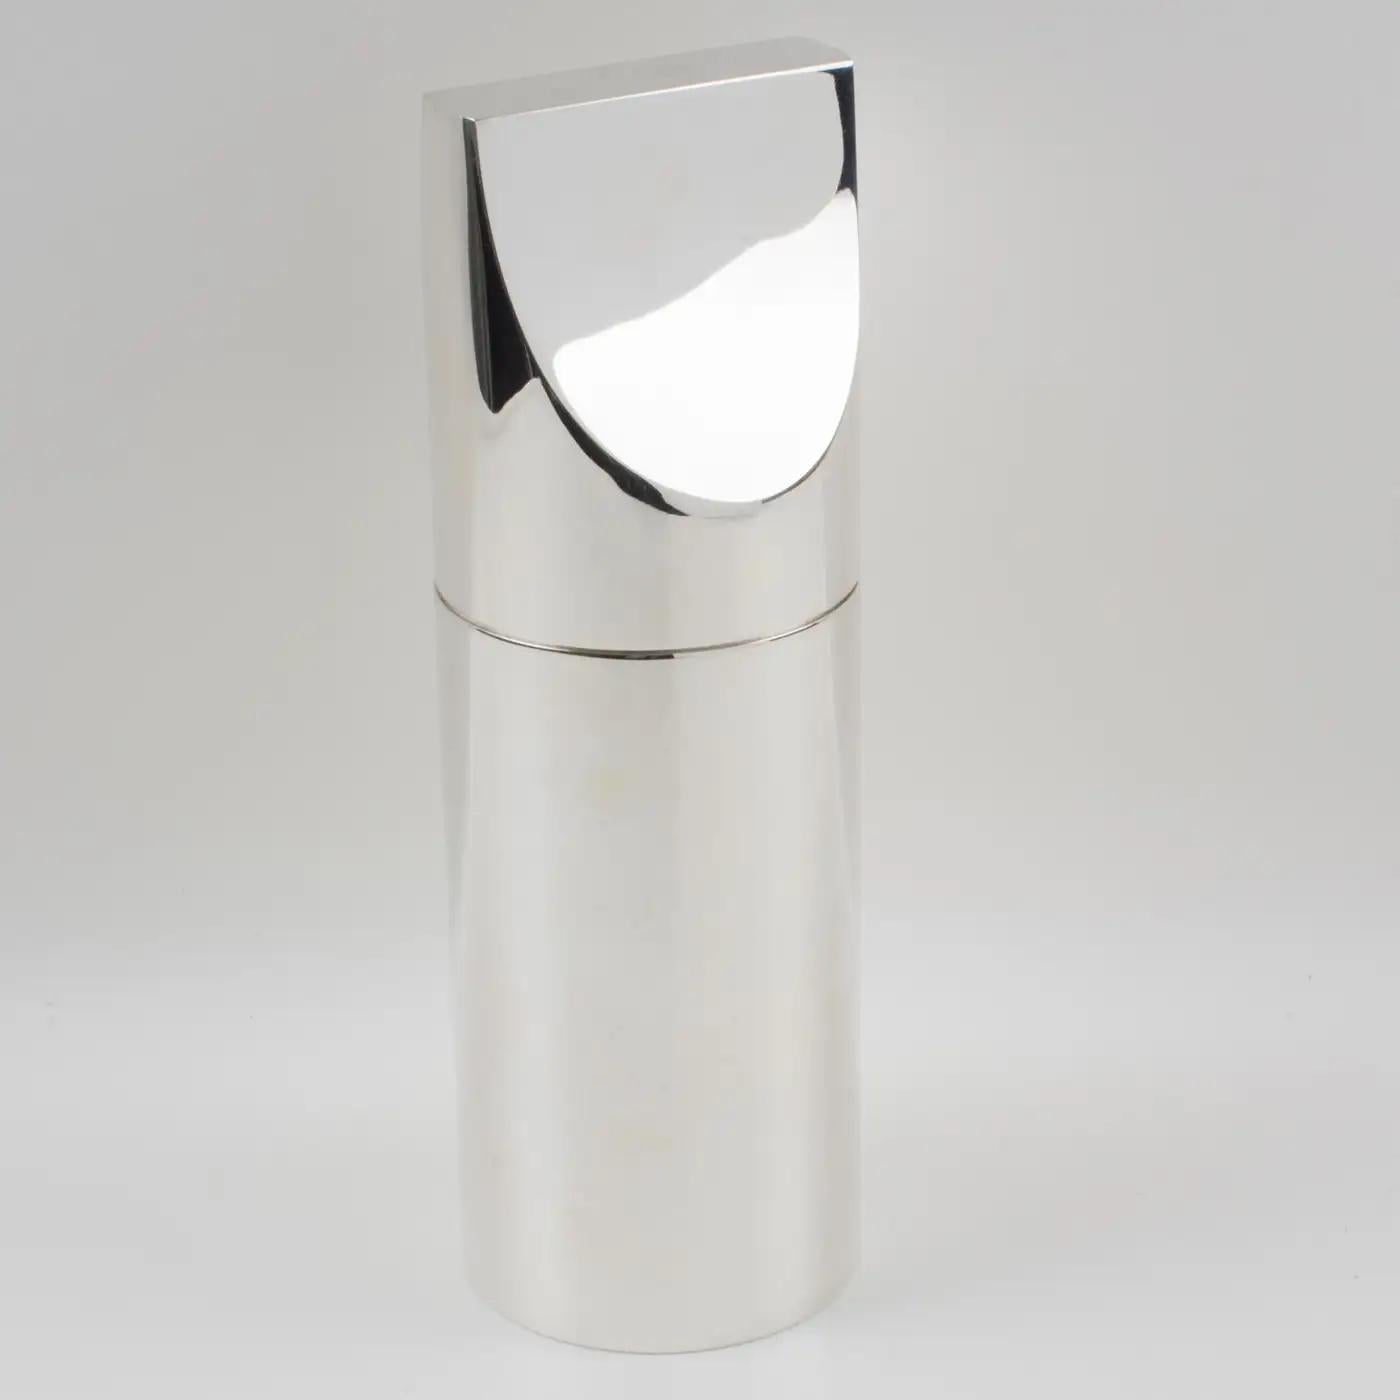 Lino Sabattini pour Sabattini Elegne a conçu cette élégante boîte décorative en métal argenté vers 1980. Cette boîte à couvercle haut présente un design géométrique minimaliste et peut être exposée comme un objet sculptural ou utilisée comme boîte